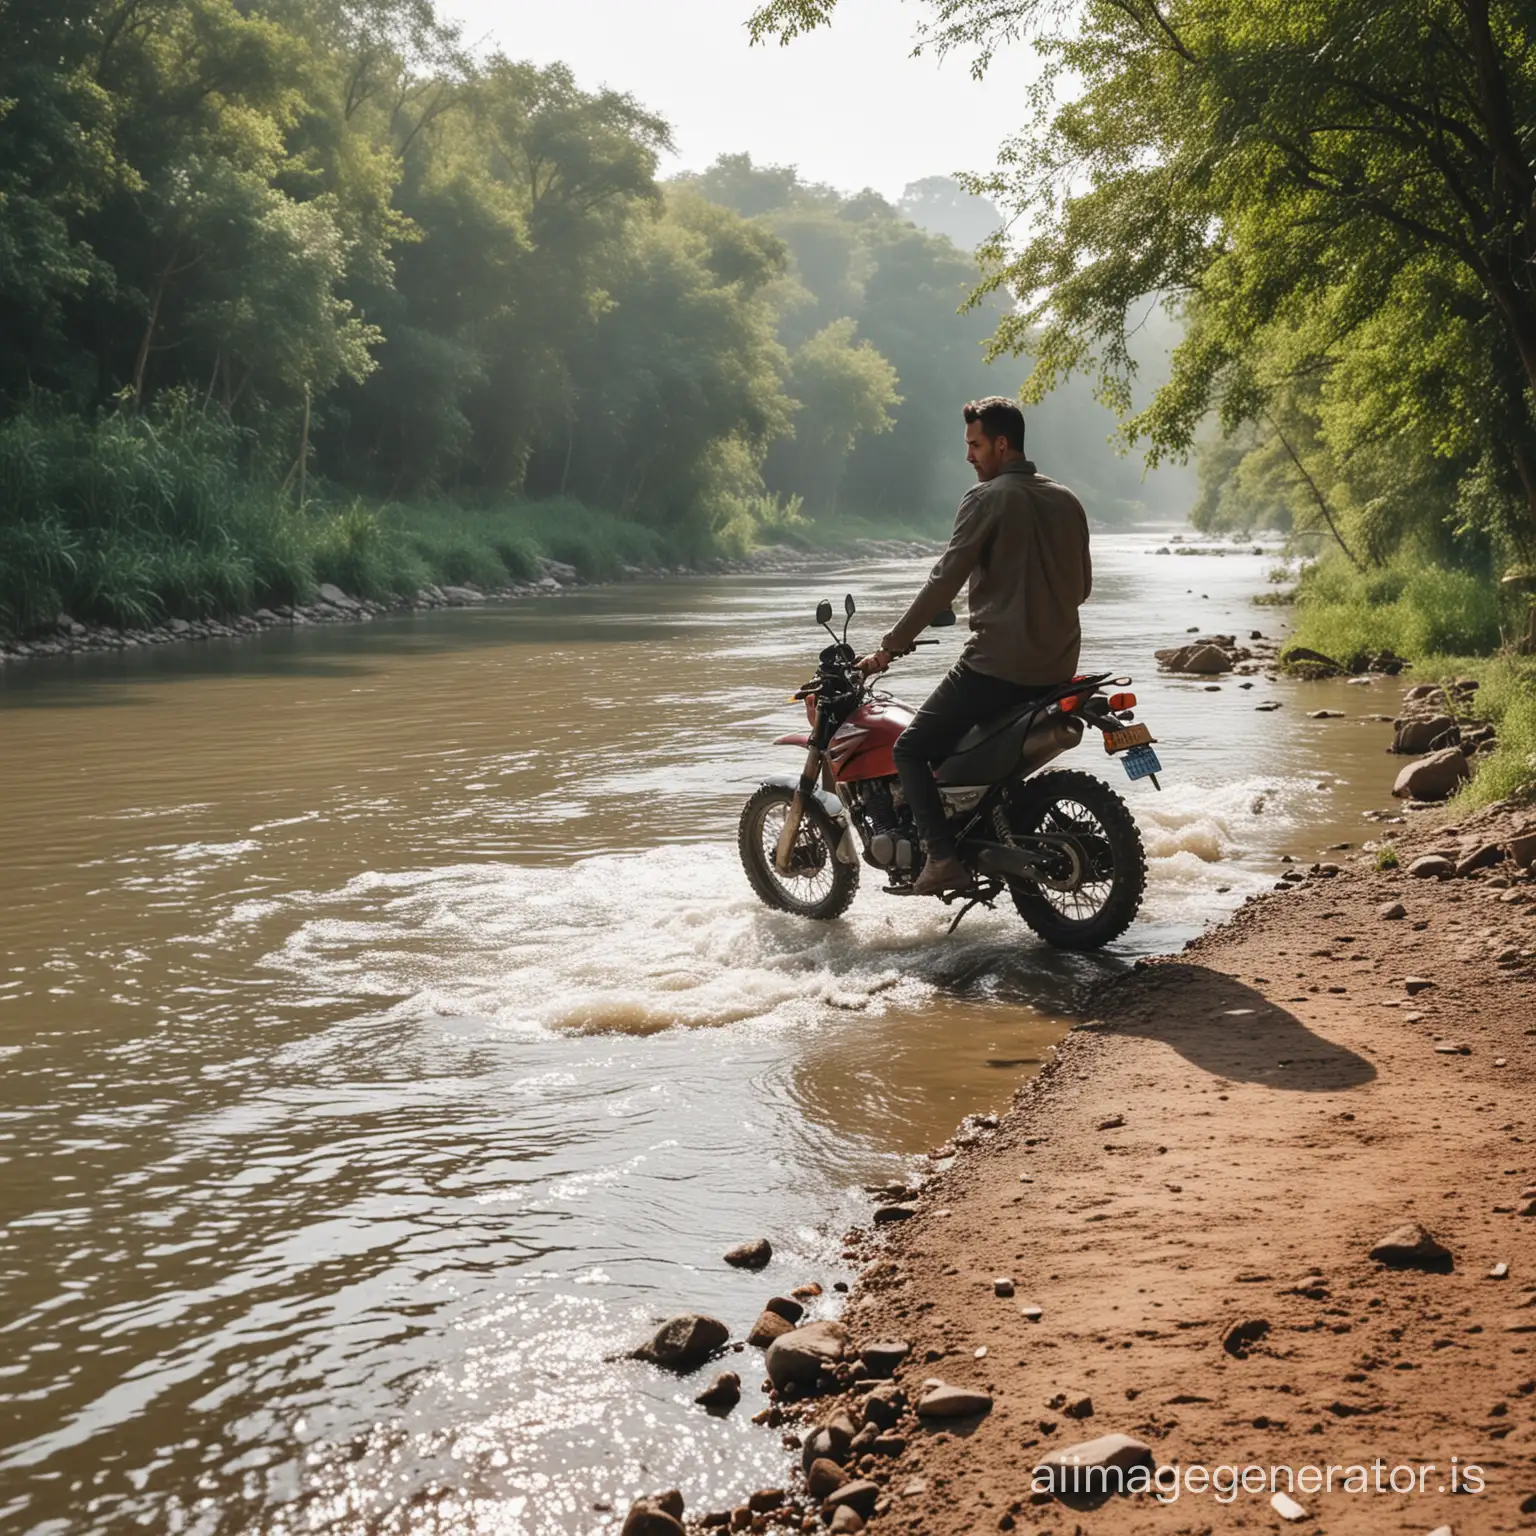 Motorbike-Rider-Enjoying-Riverside-Scenery